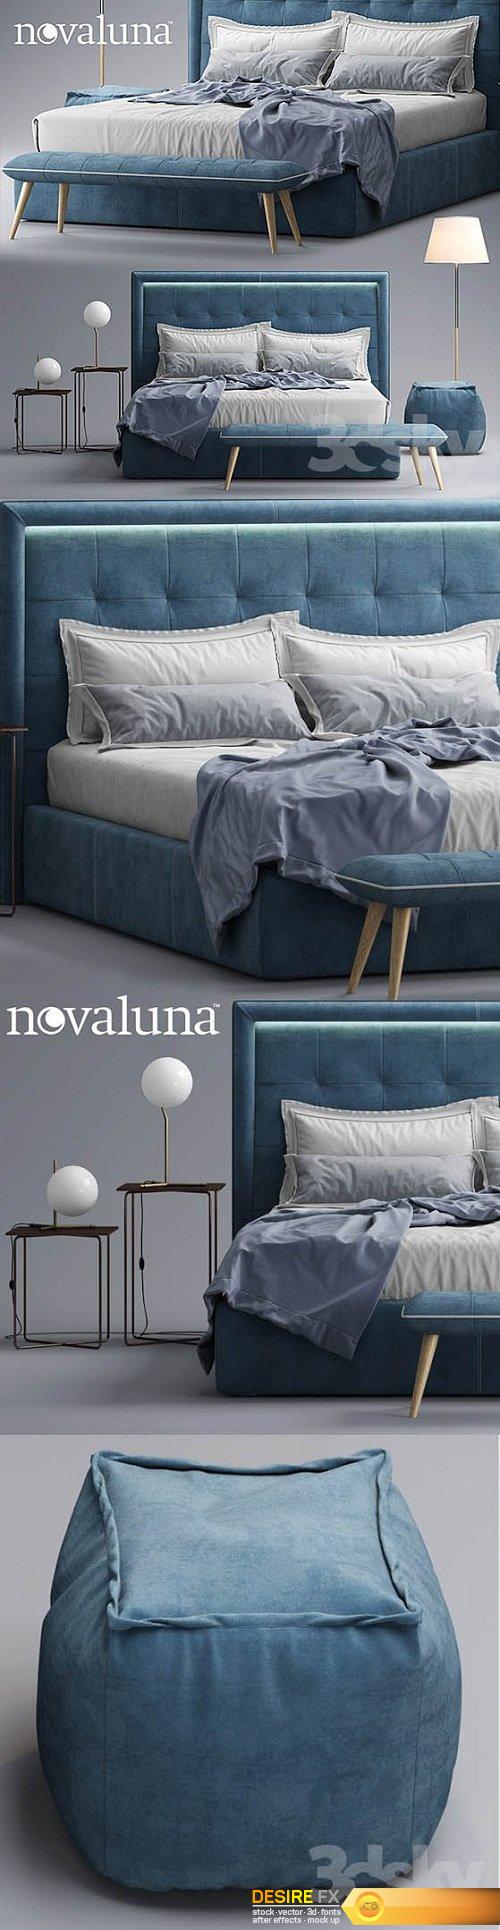 Bed Novaluna PRINCE 3d Model